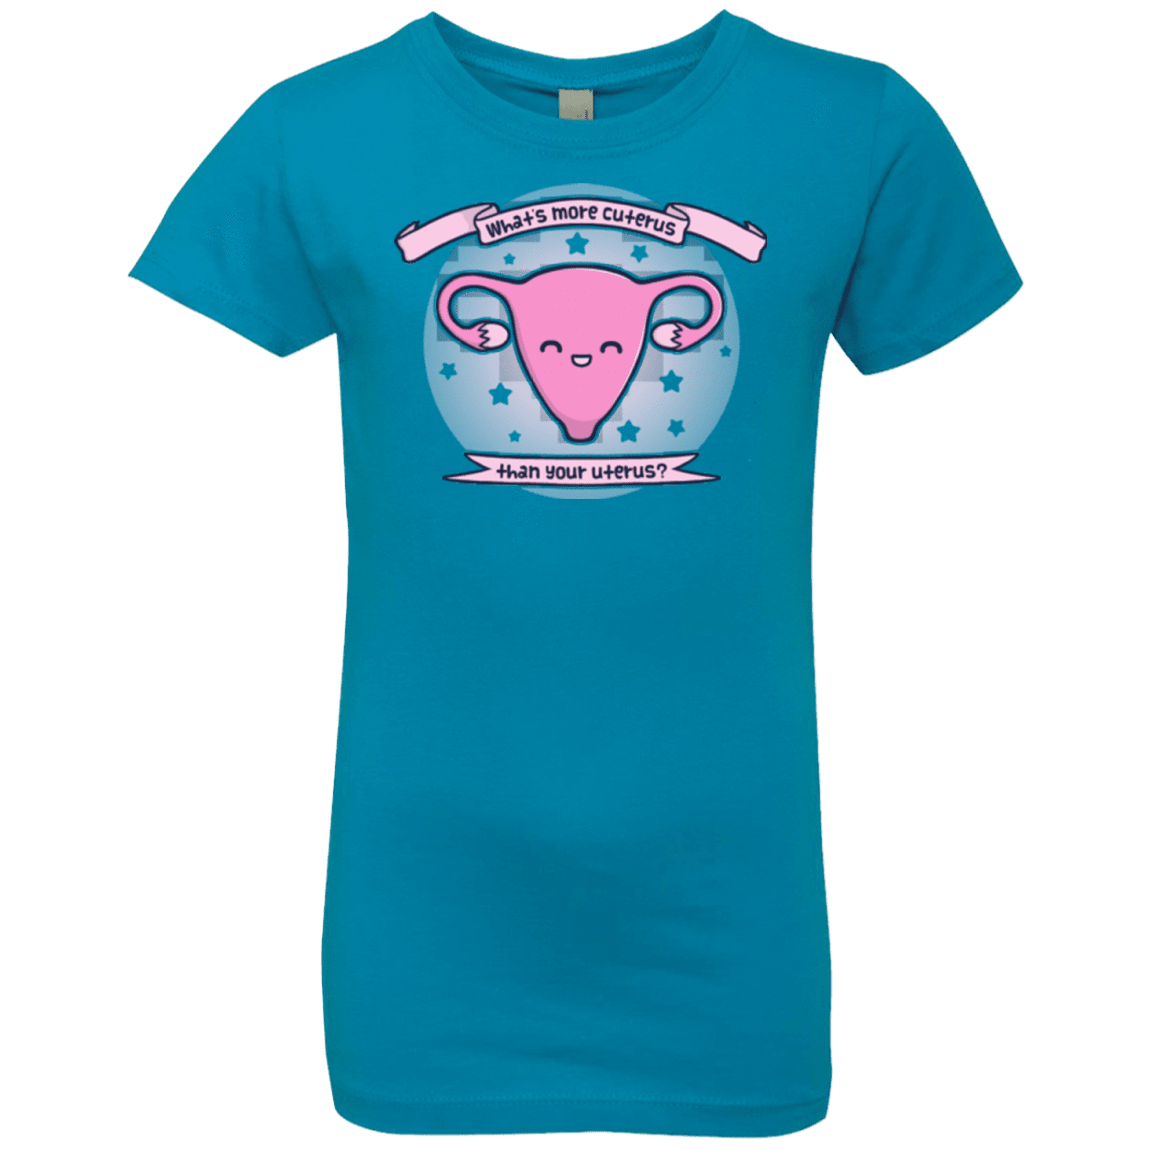 T-Shirts Turquoise / YXS Cuterus Girls Premium T-Shirt